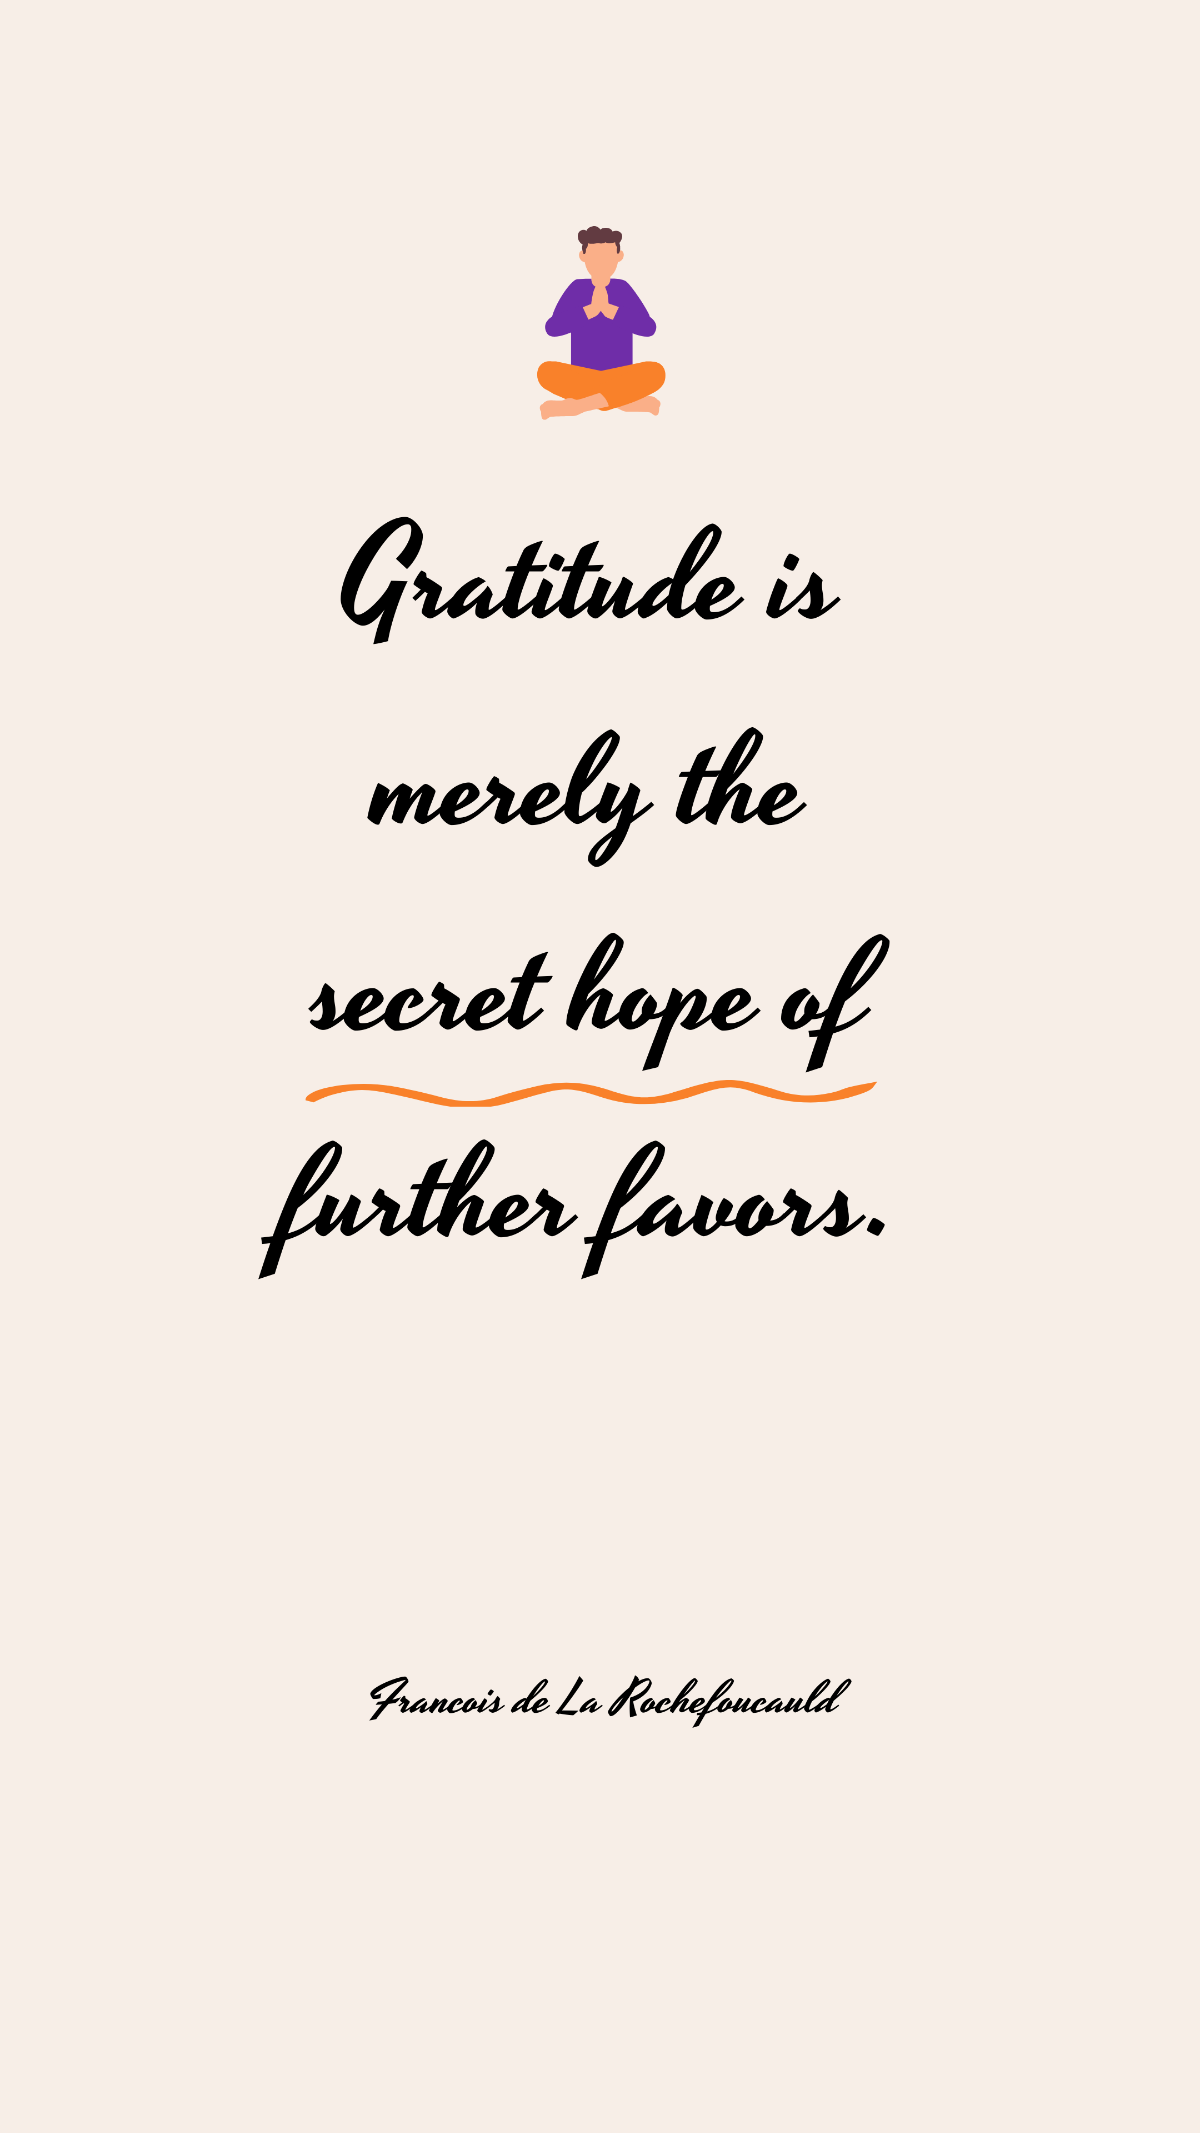 Francois de La Rochefoucauld - Gratitude is merely the secret hope of further favors.